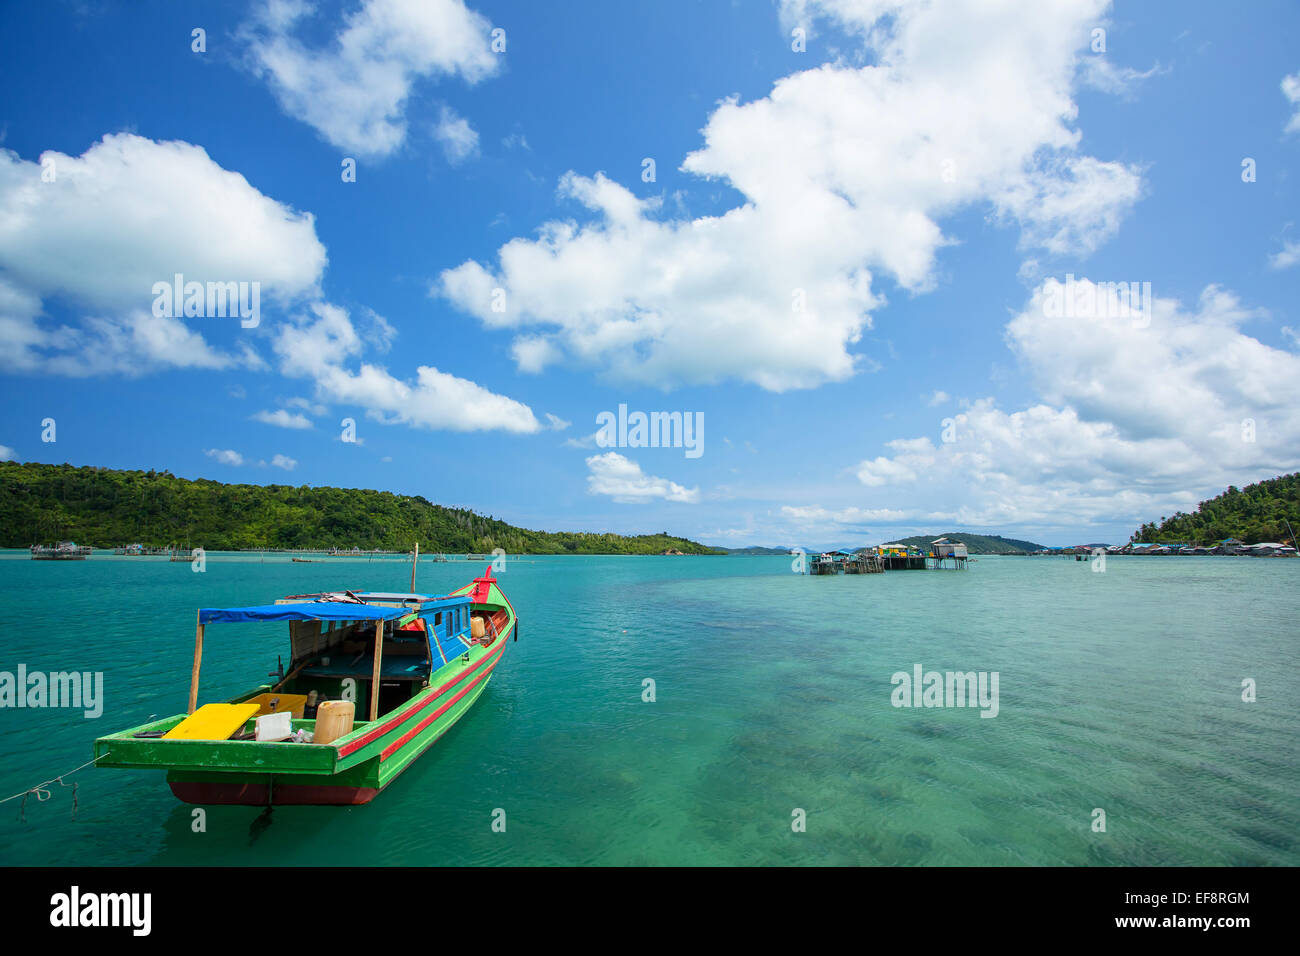 Indonesia, Riau Islands, Pulau Matak, Emerald Sea, Moored boat at bay Stock Photo